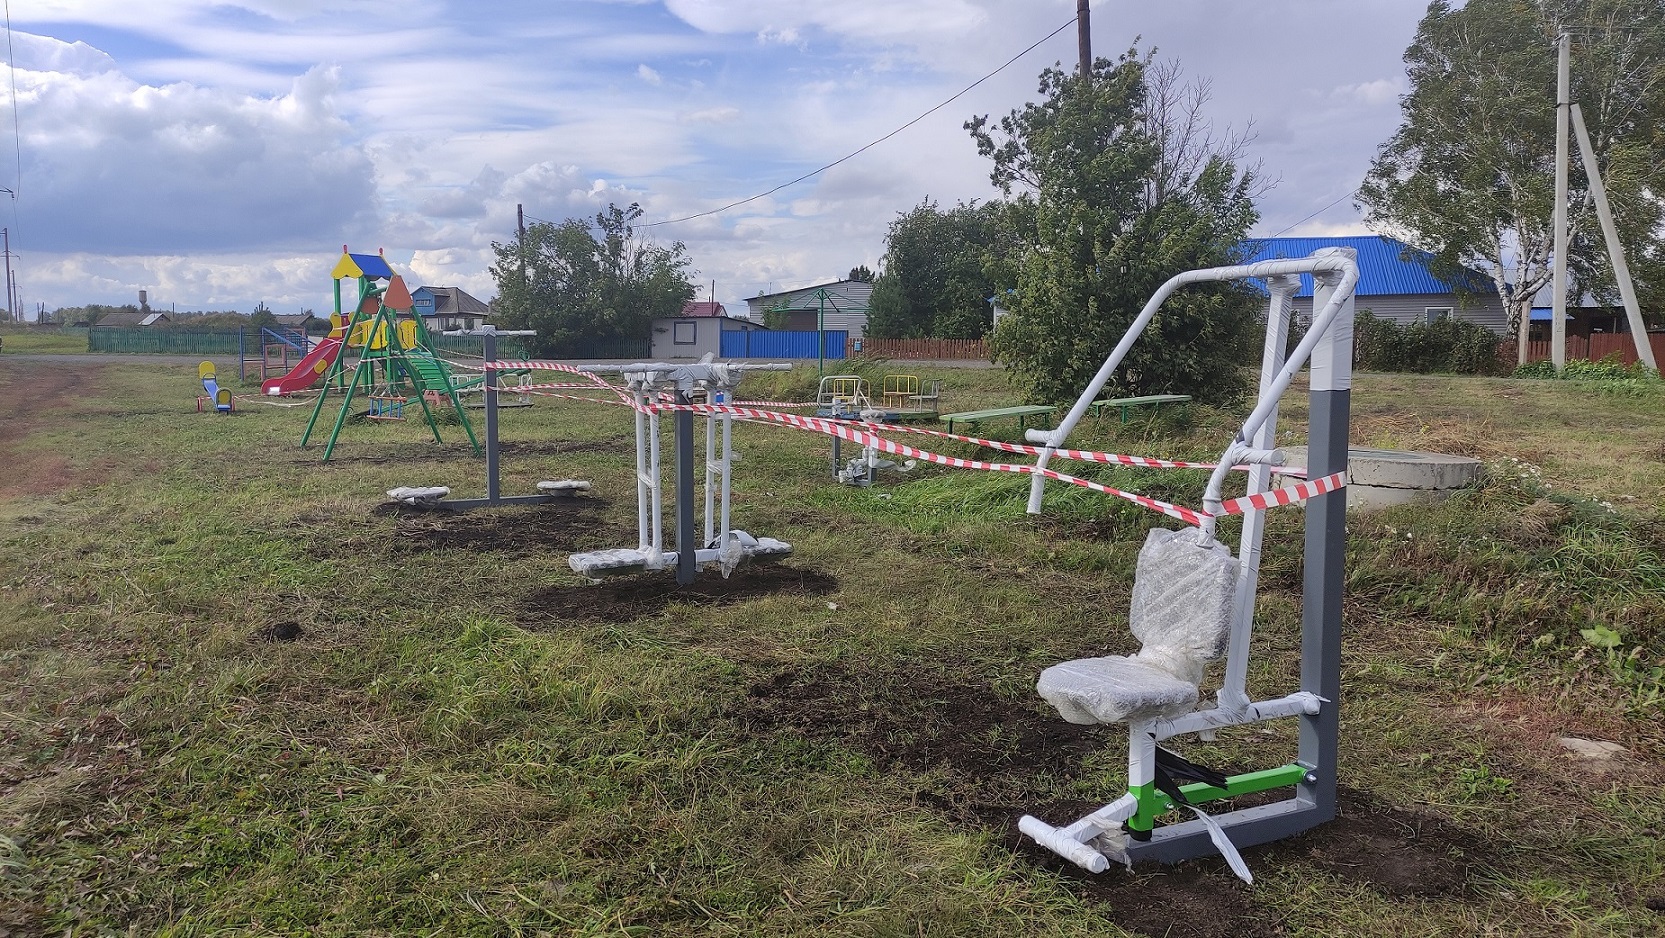 Игровые площадки и уличные тренажеры установил разрез Пермяковский в Евтинском сельском поселении. Стройсервис